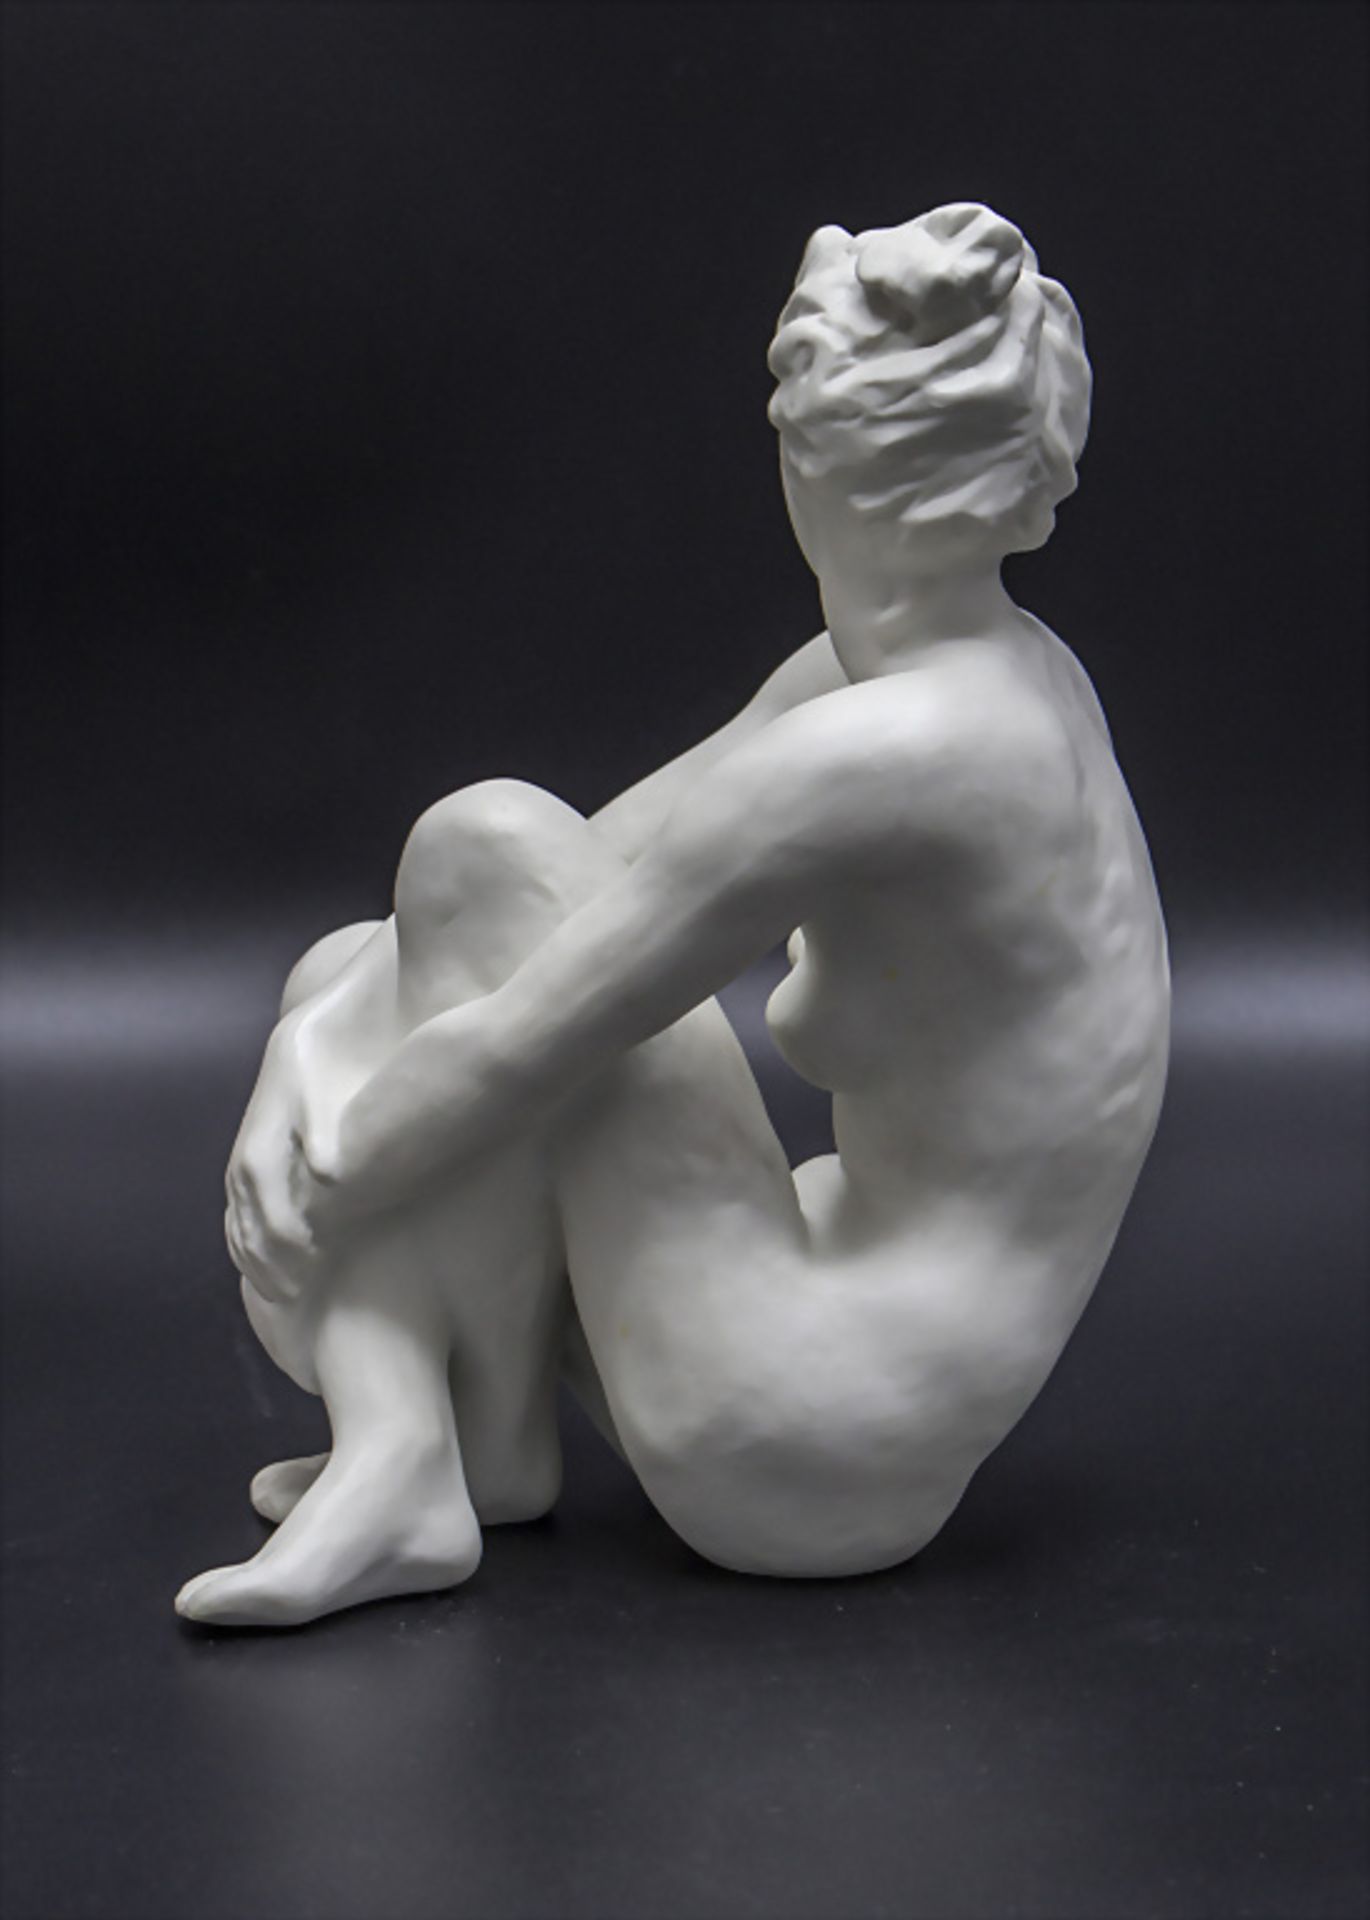 Porzellan Akt 'Die Sitzende' / A porcelain sculpture of a sitting nude, Lore Friedrich-Gronau, ... - Bild 3 aus 5